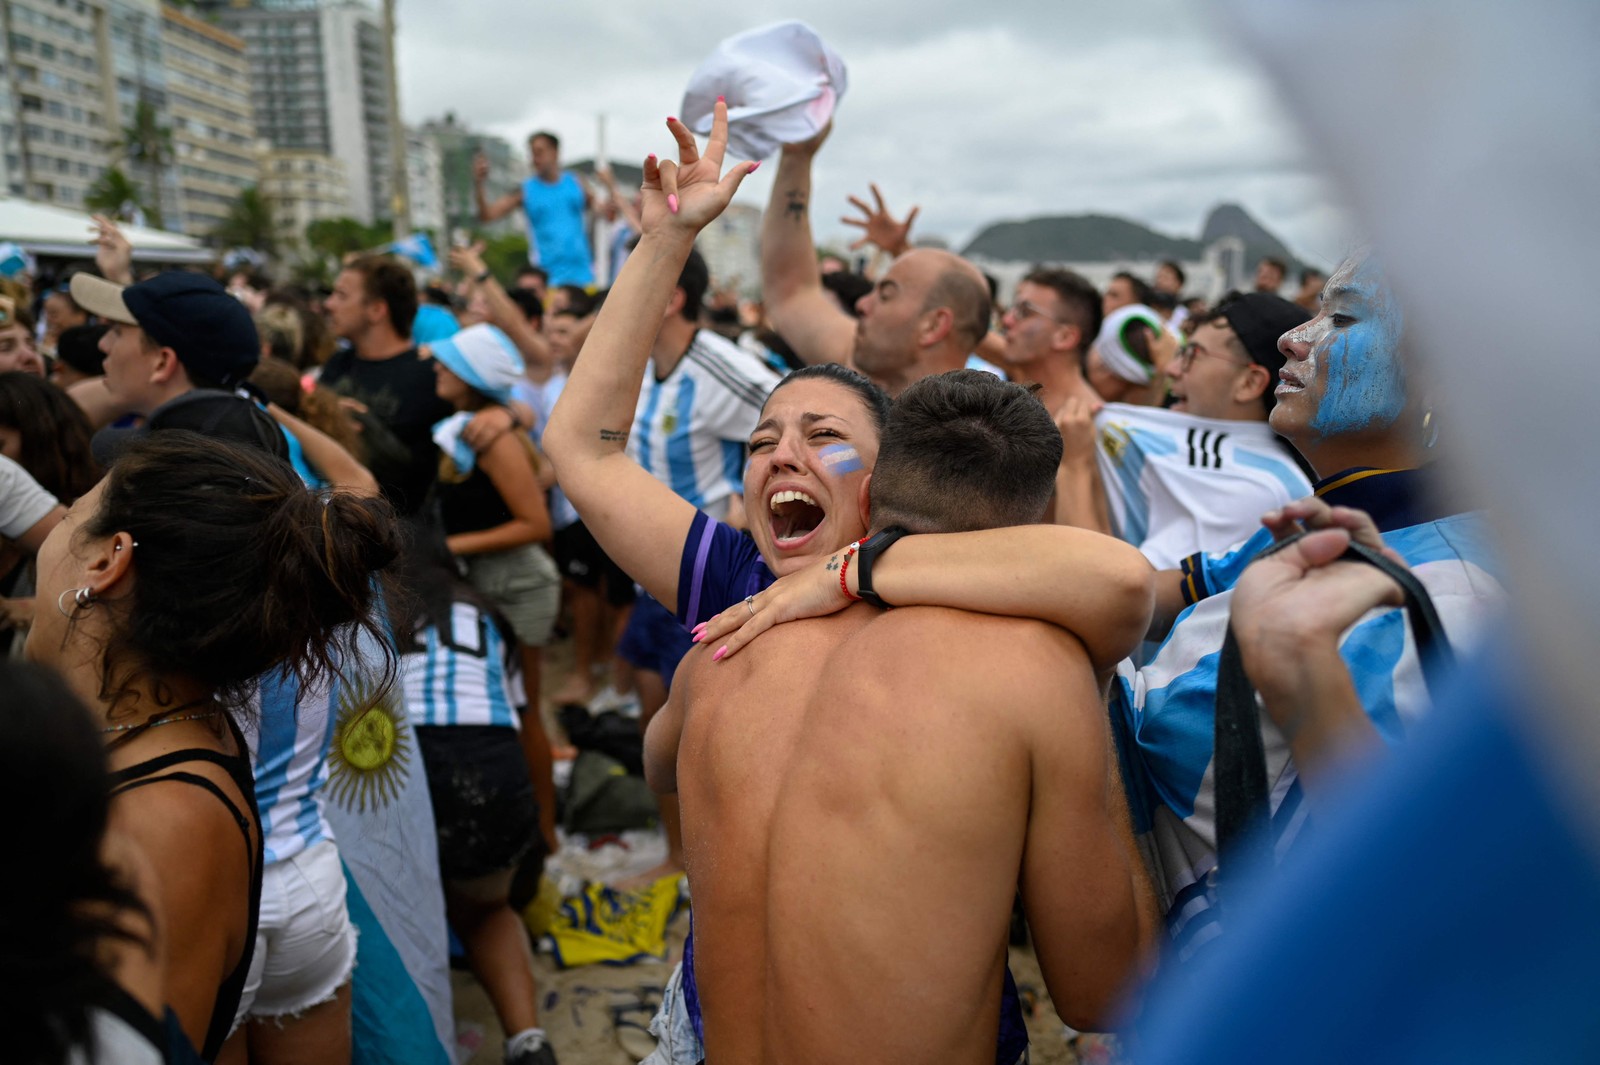 Torcedores comemoram um gol na praia de Copacabana, no Rio de Janeiro — Foto: MAURO PIMENTEL/AFP